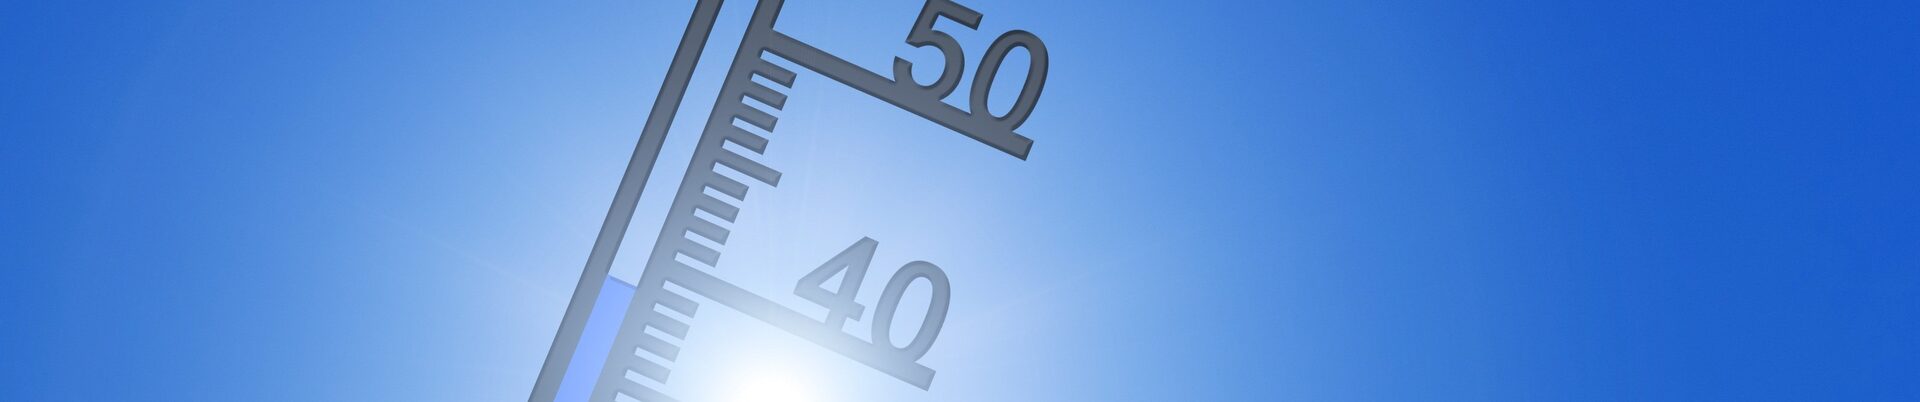 Thermometer vor blauem Himmel zeigt 40 Grad Celsius an